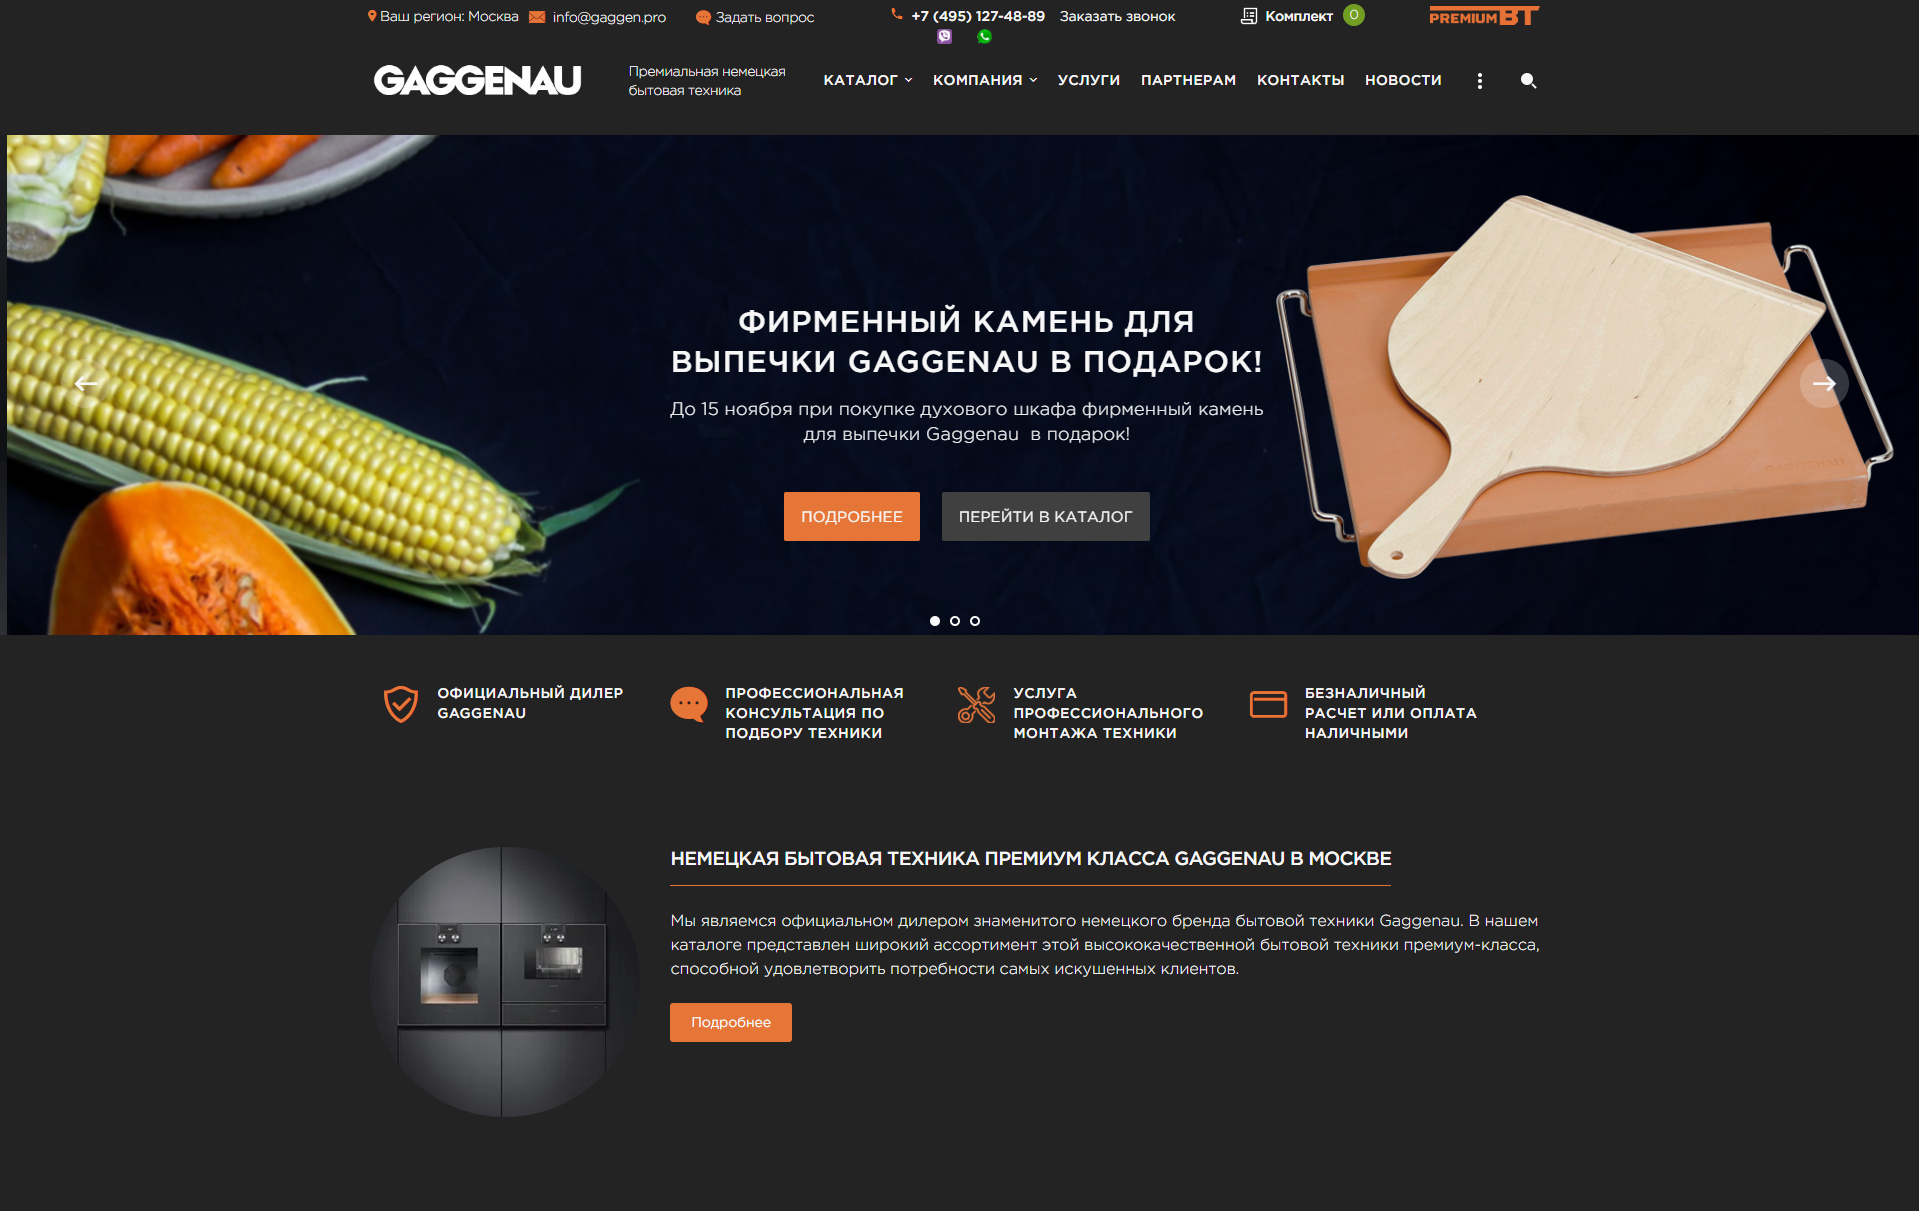 Интернет-магазин официального дилера знаменитого немецкого бренда бытовой техники Gaggenau